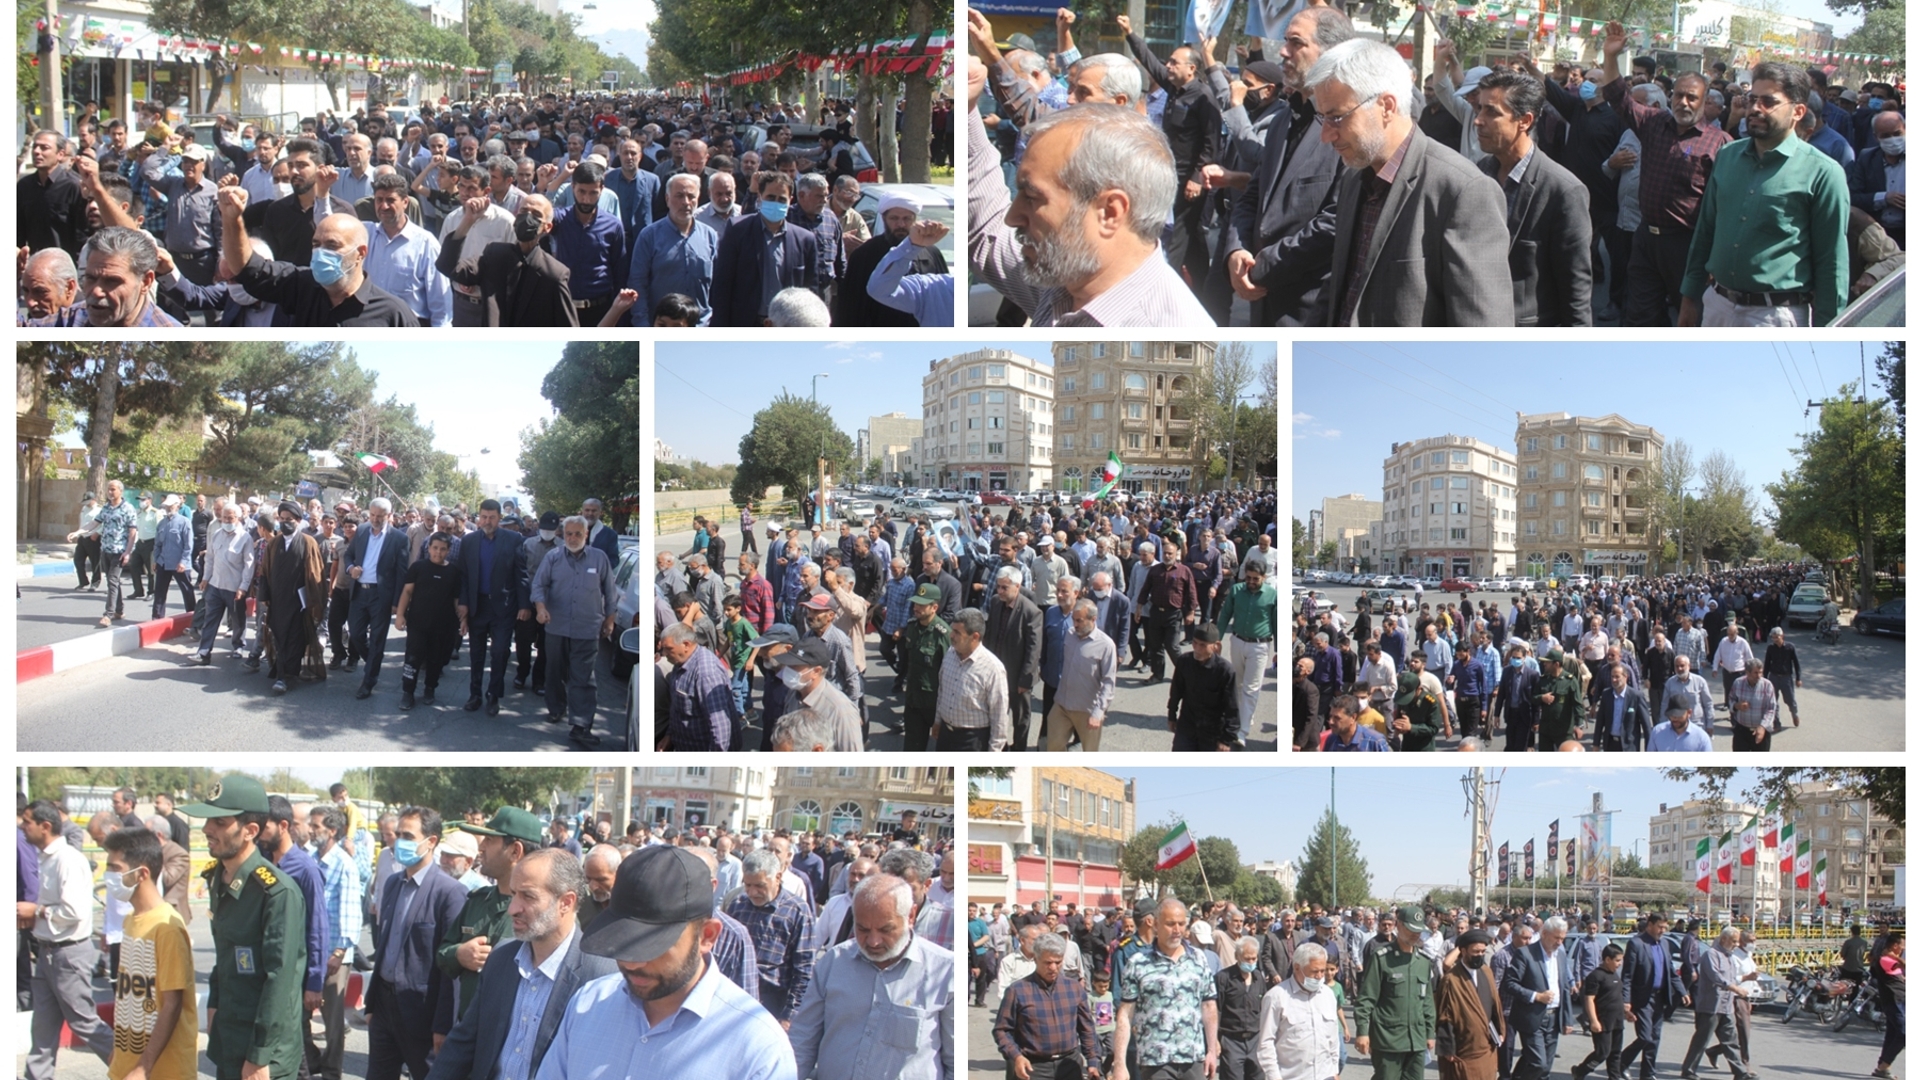 مردم شهرستان خمین در محکومیت اقدمات هنجارشکنان راهپیمایی کردند